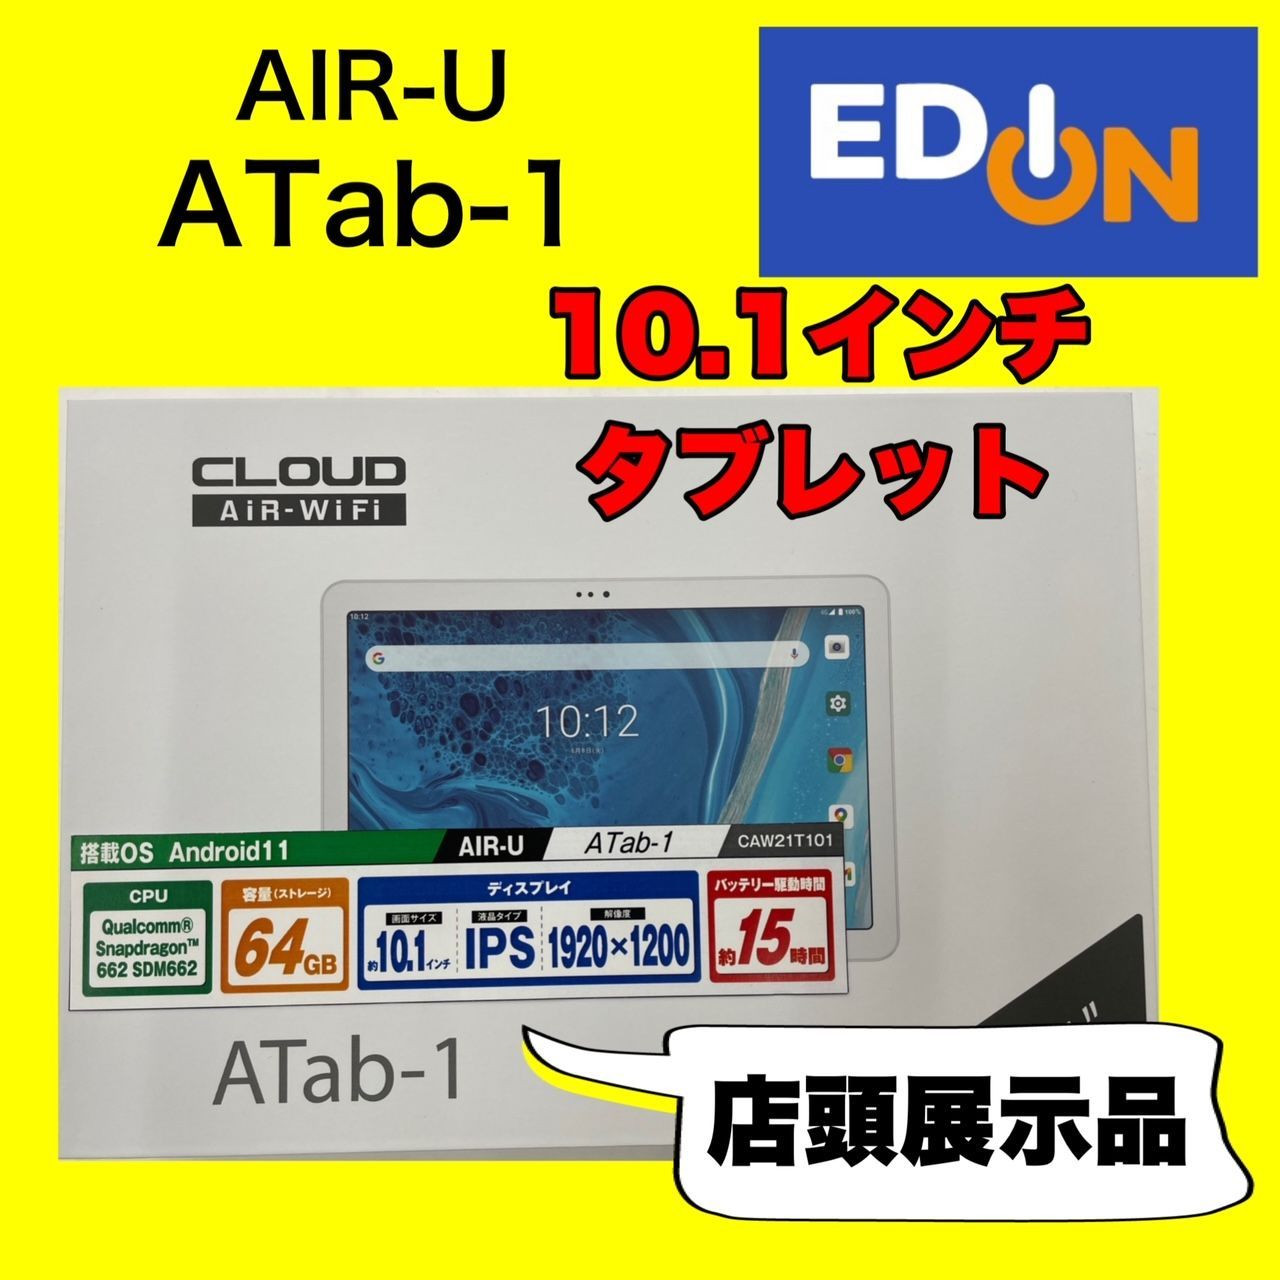 04191】（店頭展示品）AIR-U 10.1インチタブレット Android11搭載 ATab 